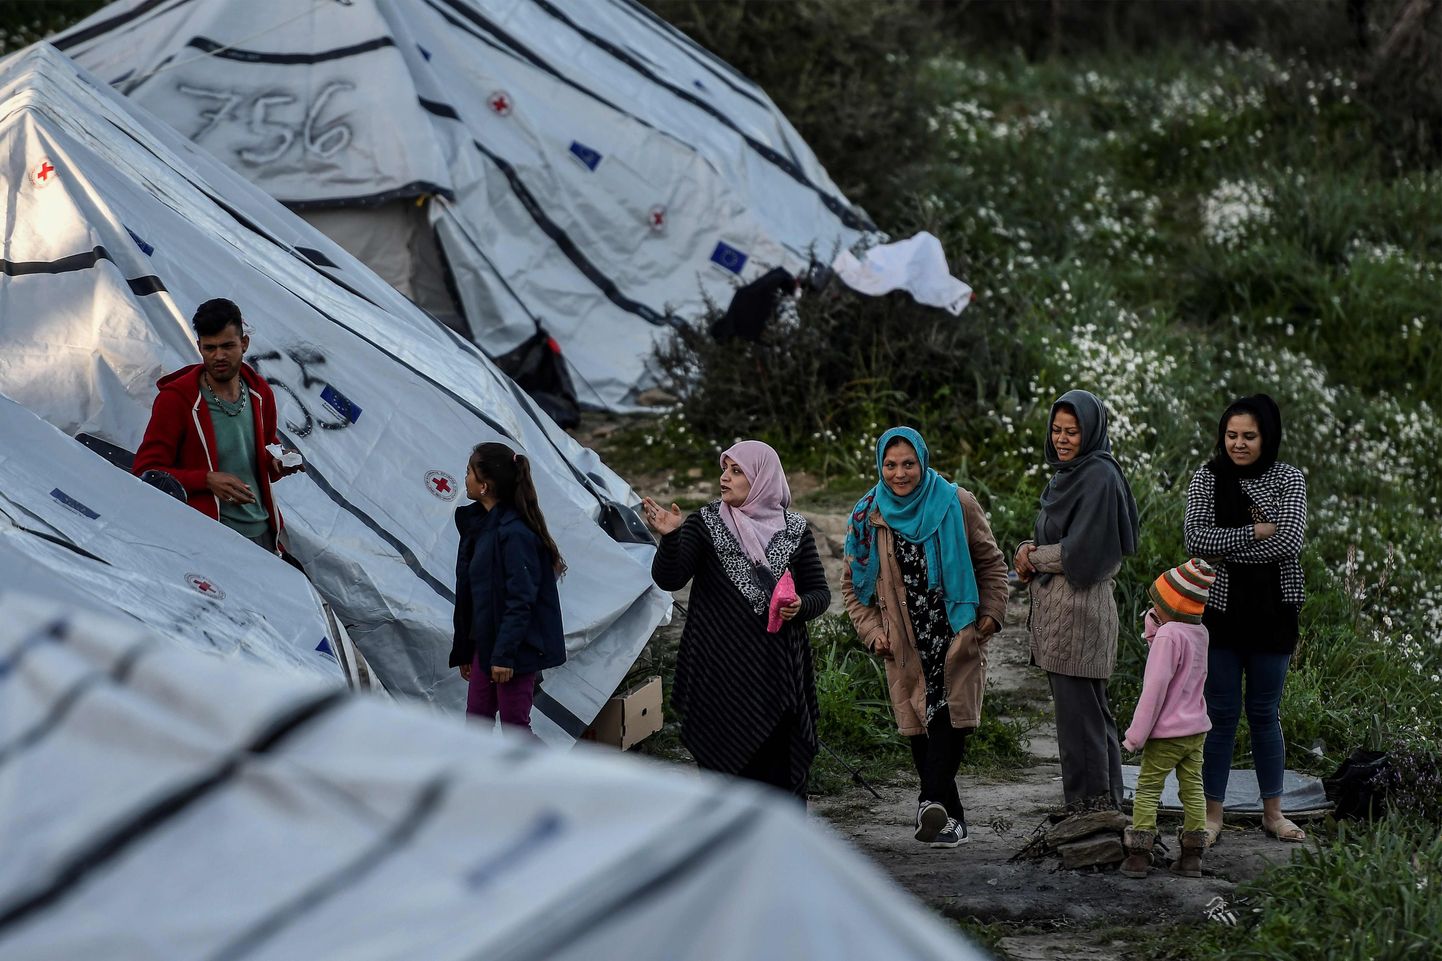 Kreeka diplomaatiliste allikate andmeil kutsus välisminister Nikos Dendias välja Türgi suursaadiku, et väljendada oma suurt pahameelt seoses Türgist saabuvate migrantide hulga järsu kasvuga.